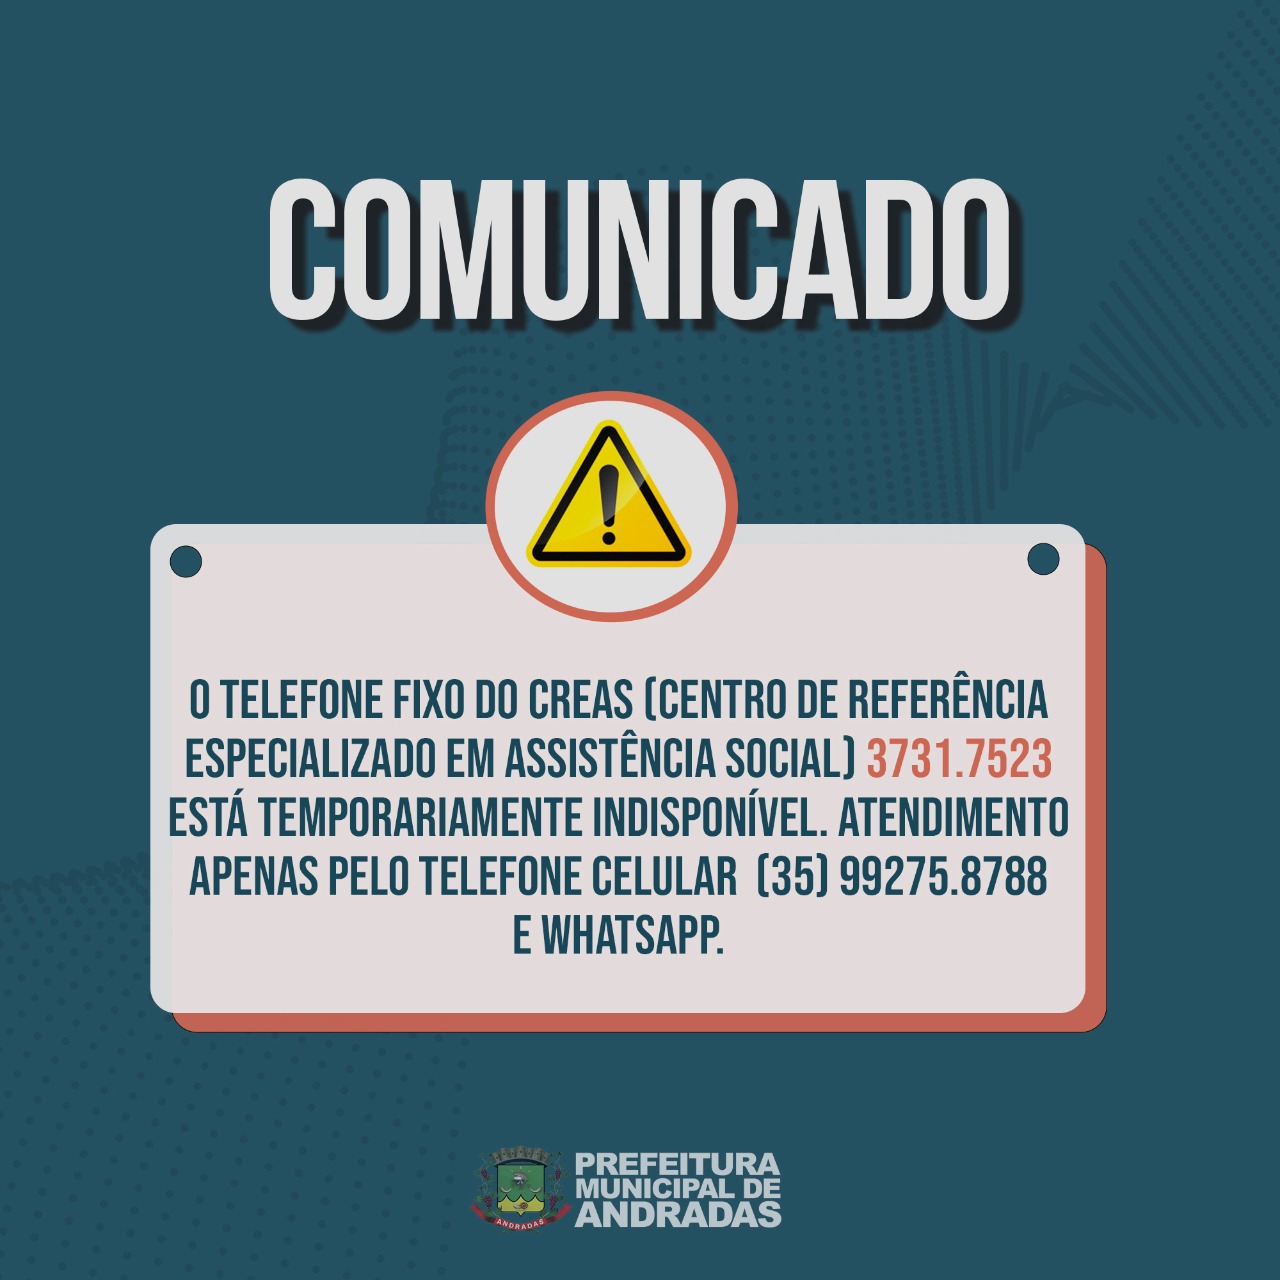 TELEFONE FIXO DO CREAS ESTÁ TEMPORARIAMENTE INDISPONÍVEL!